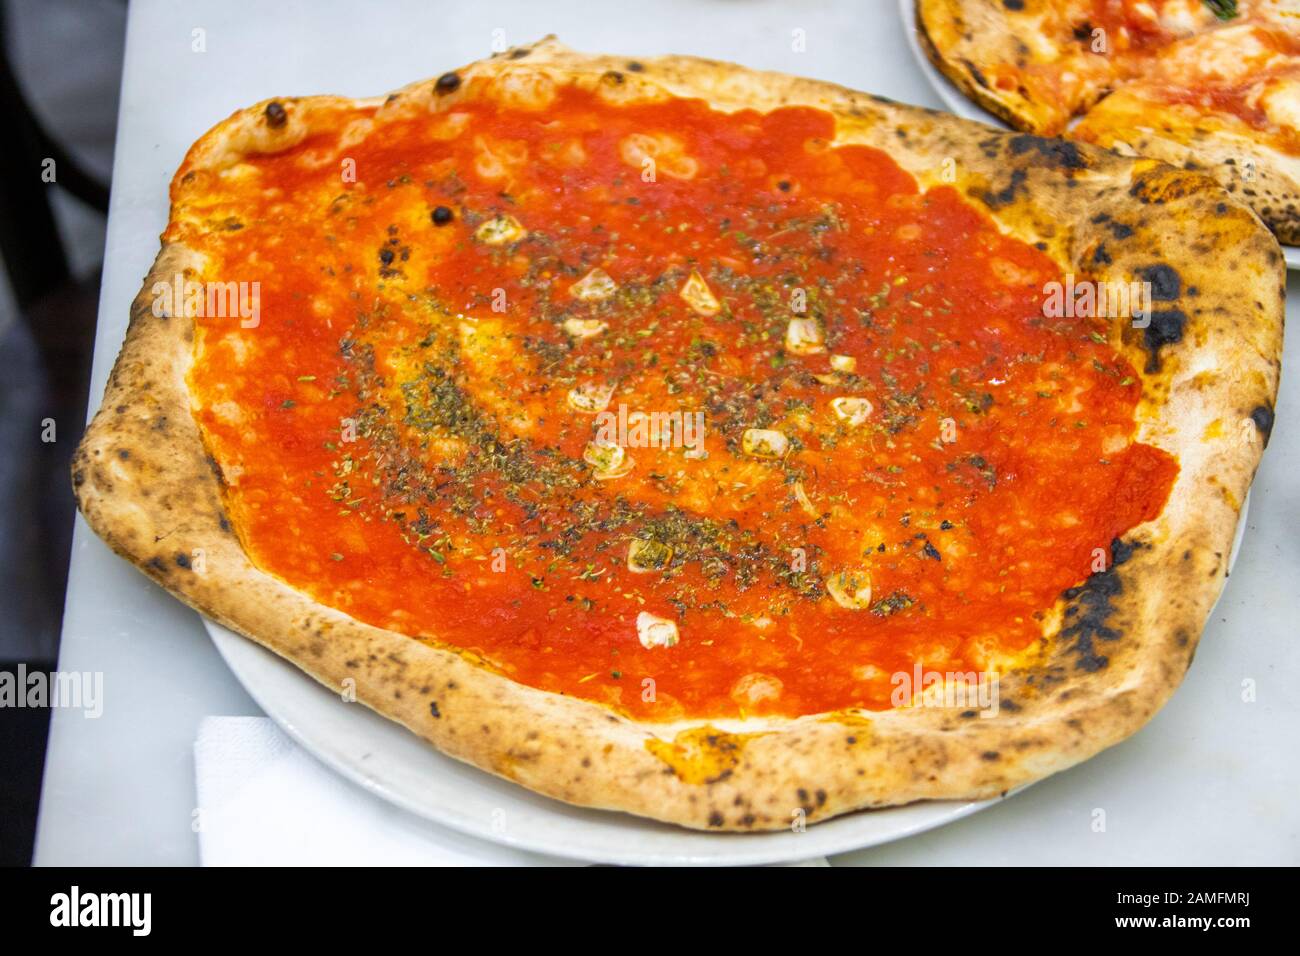 Pizza Marinara at Pizzeria da Michele, Naples, Italy Stock Photo